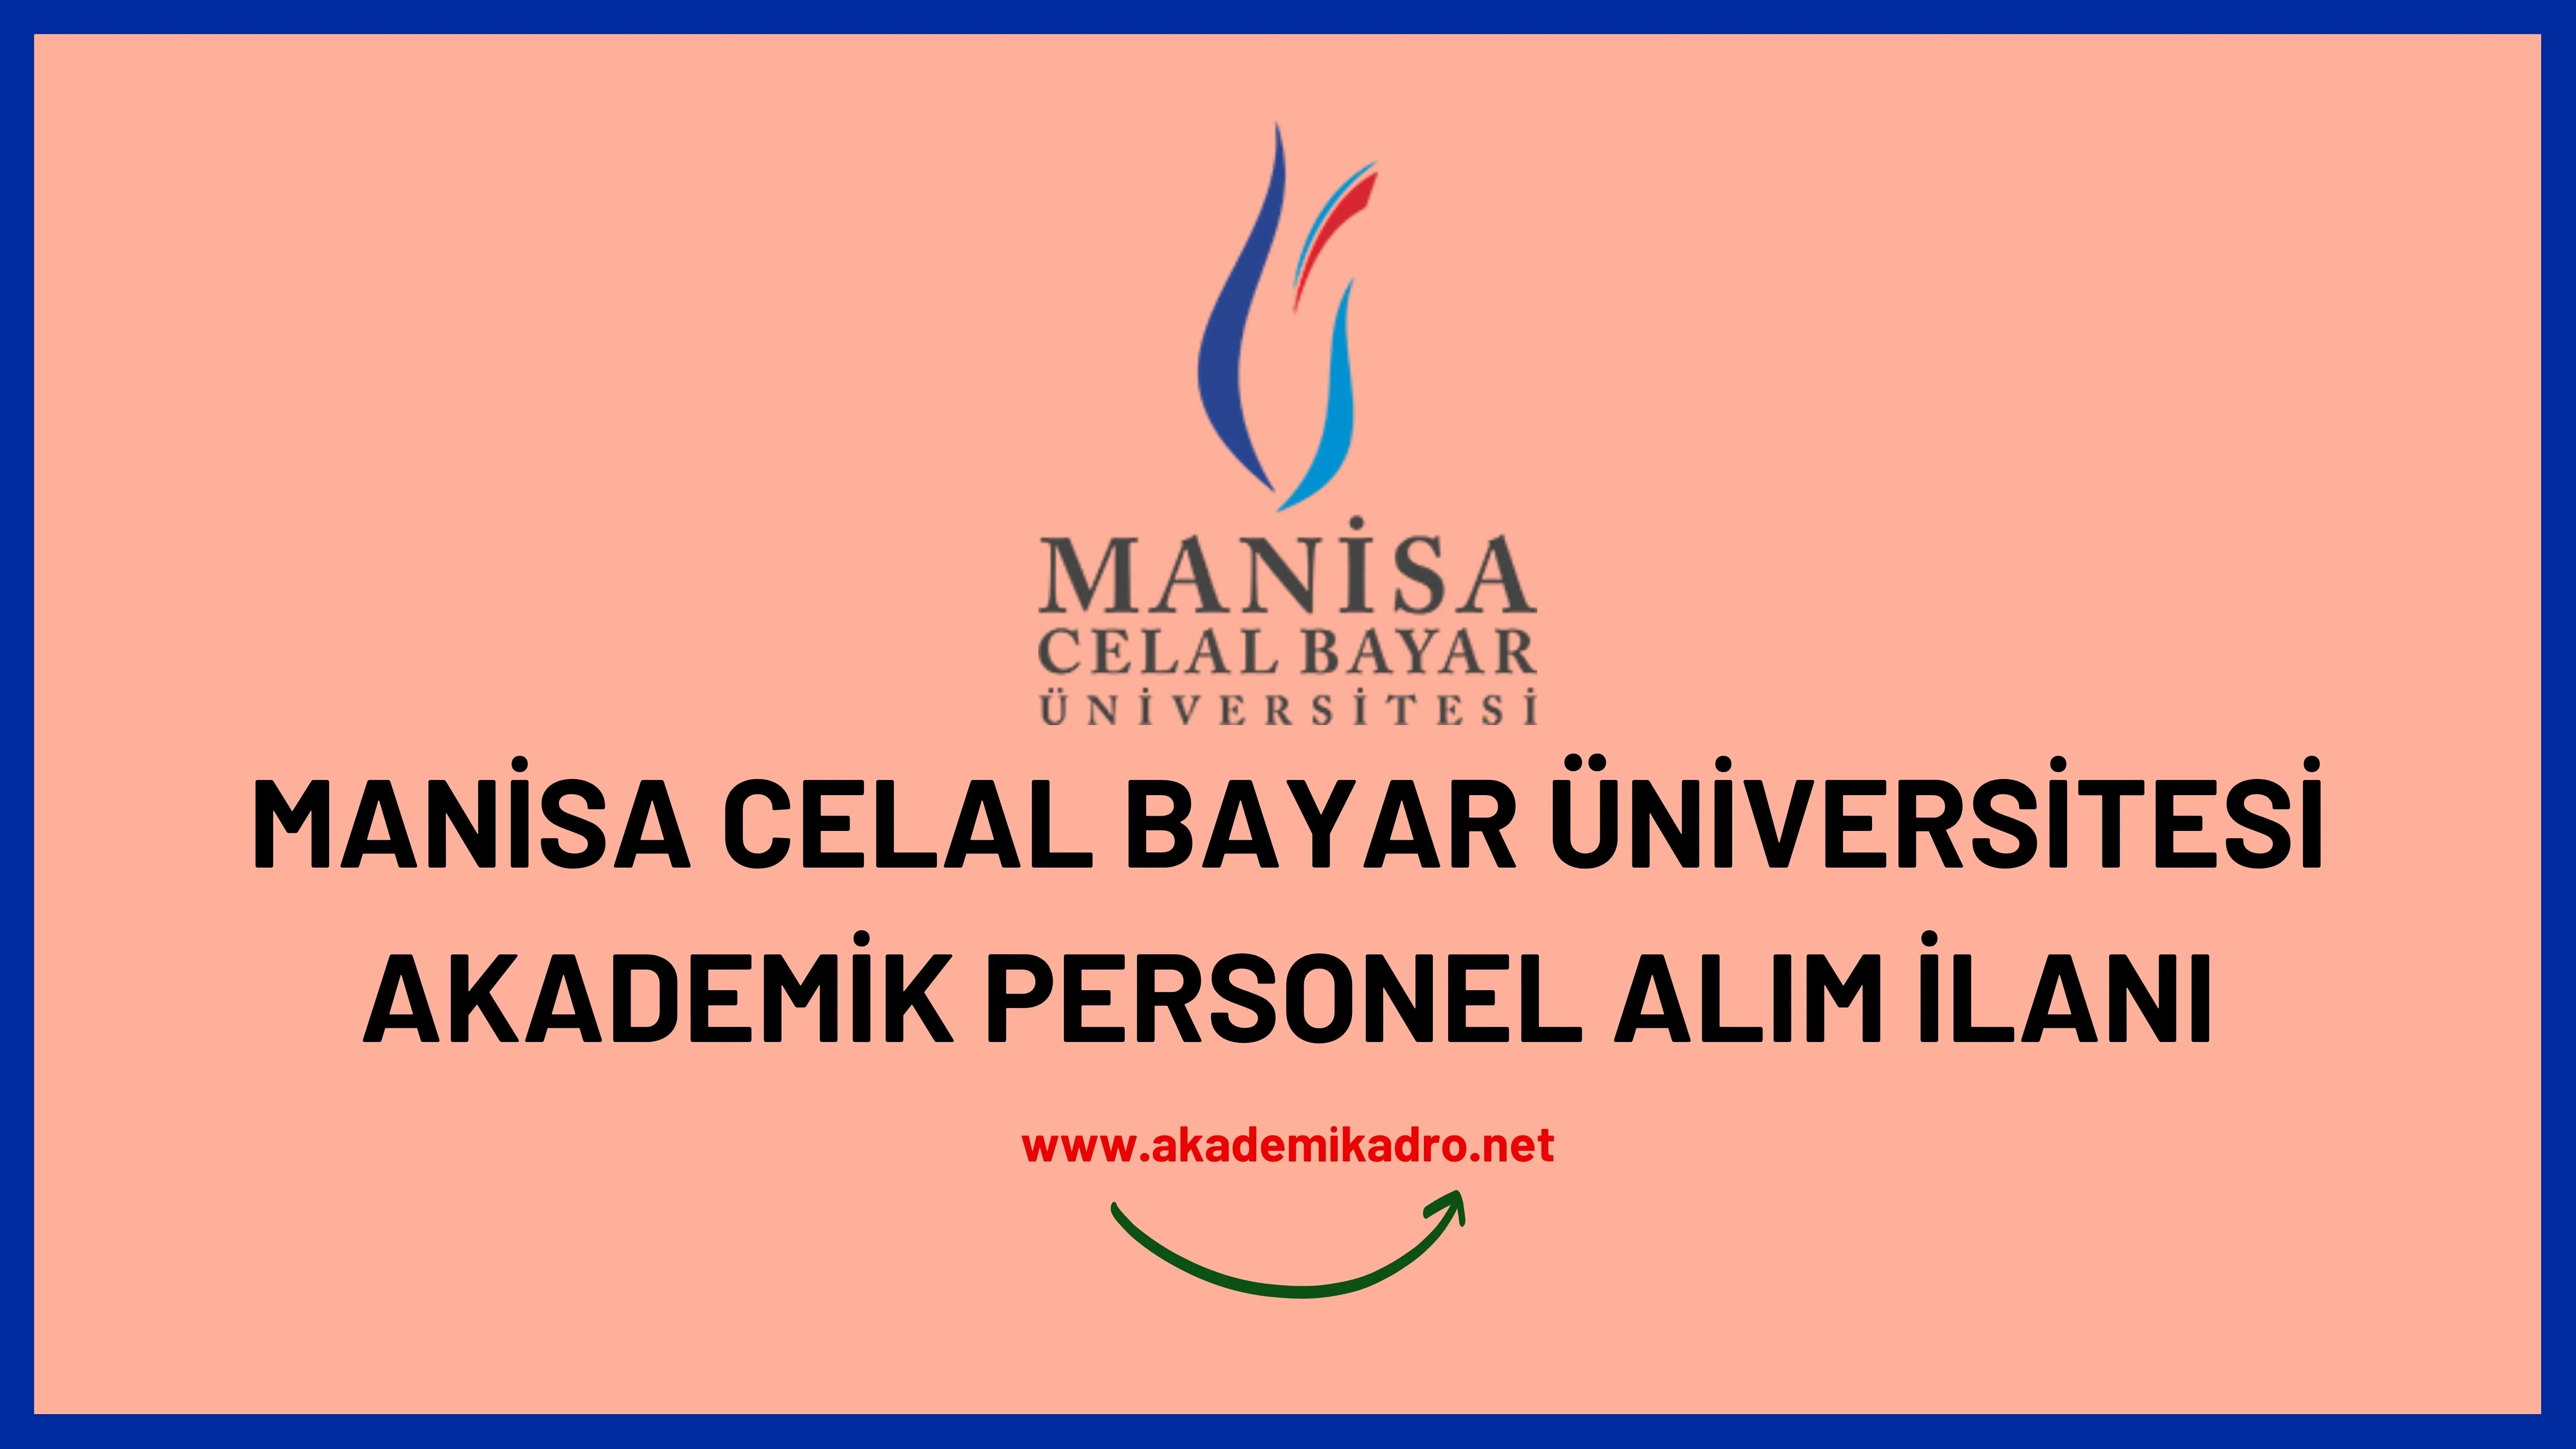 Manisa Celal Bayar Üniversitesi birçok alandan 67 akademik personel alacak.